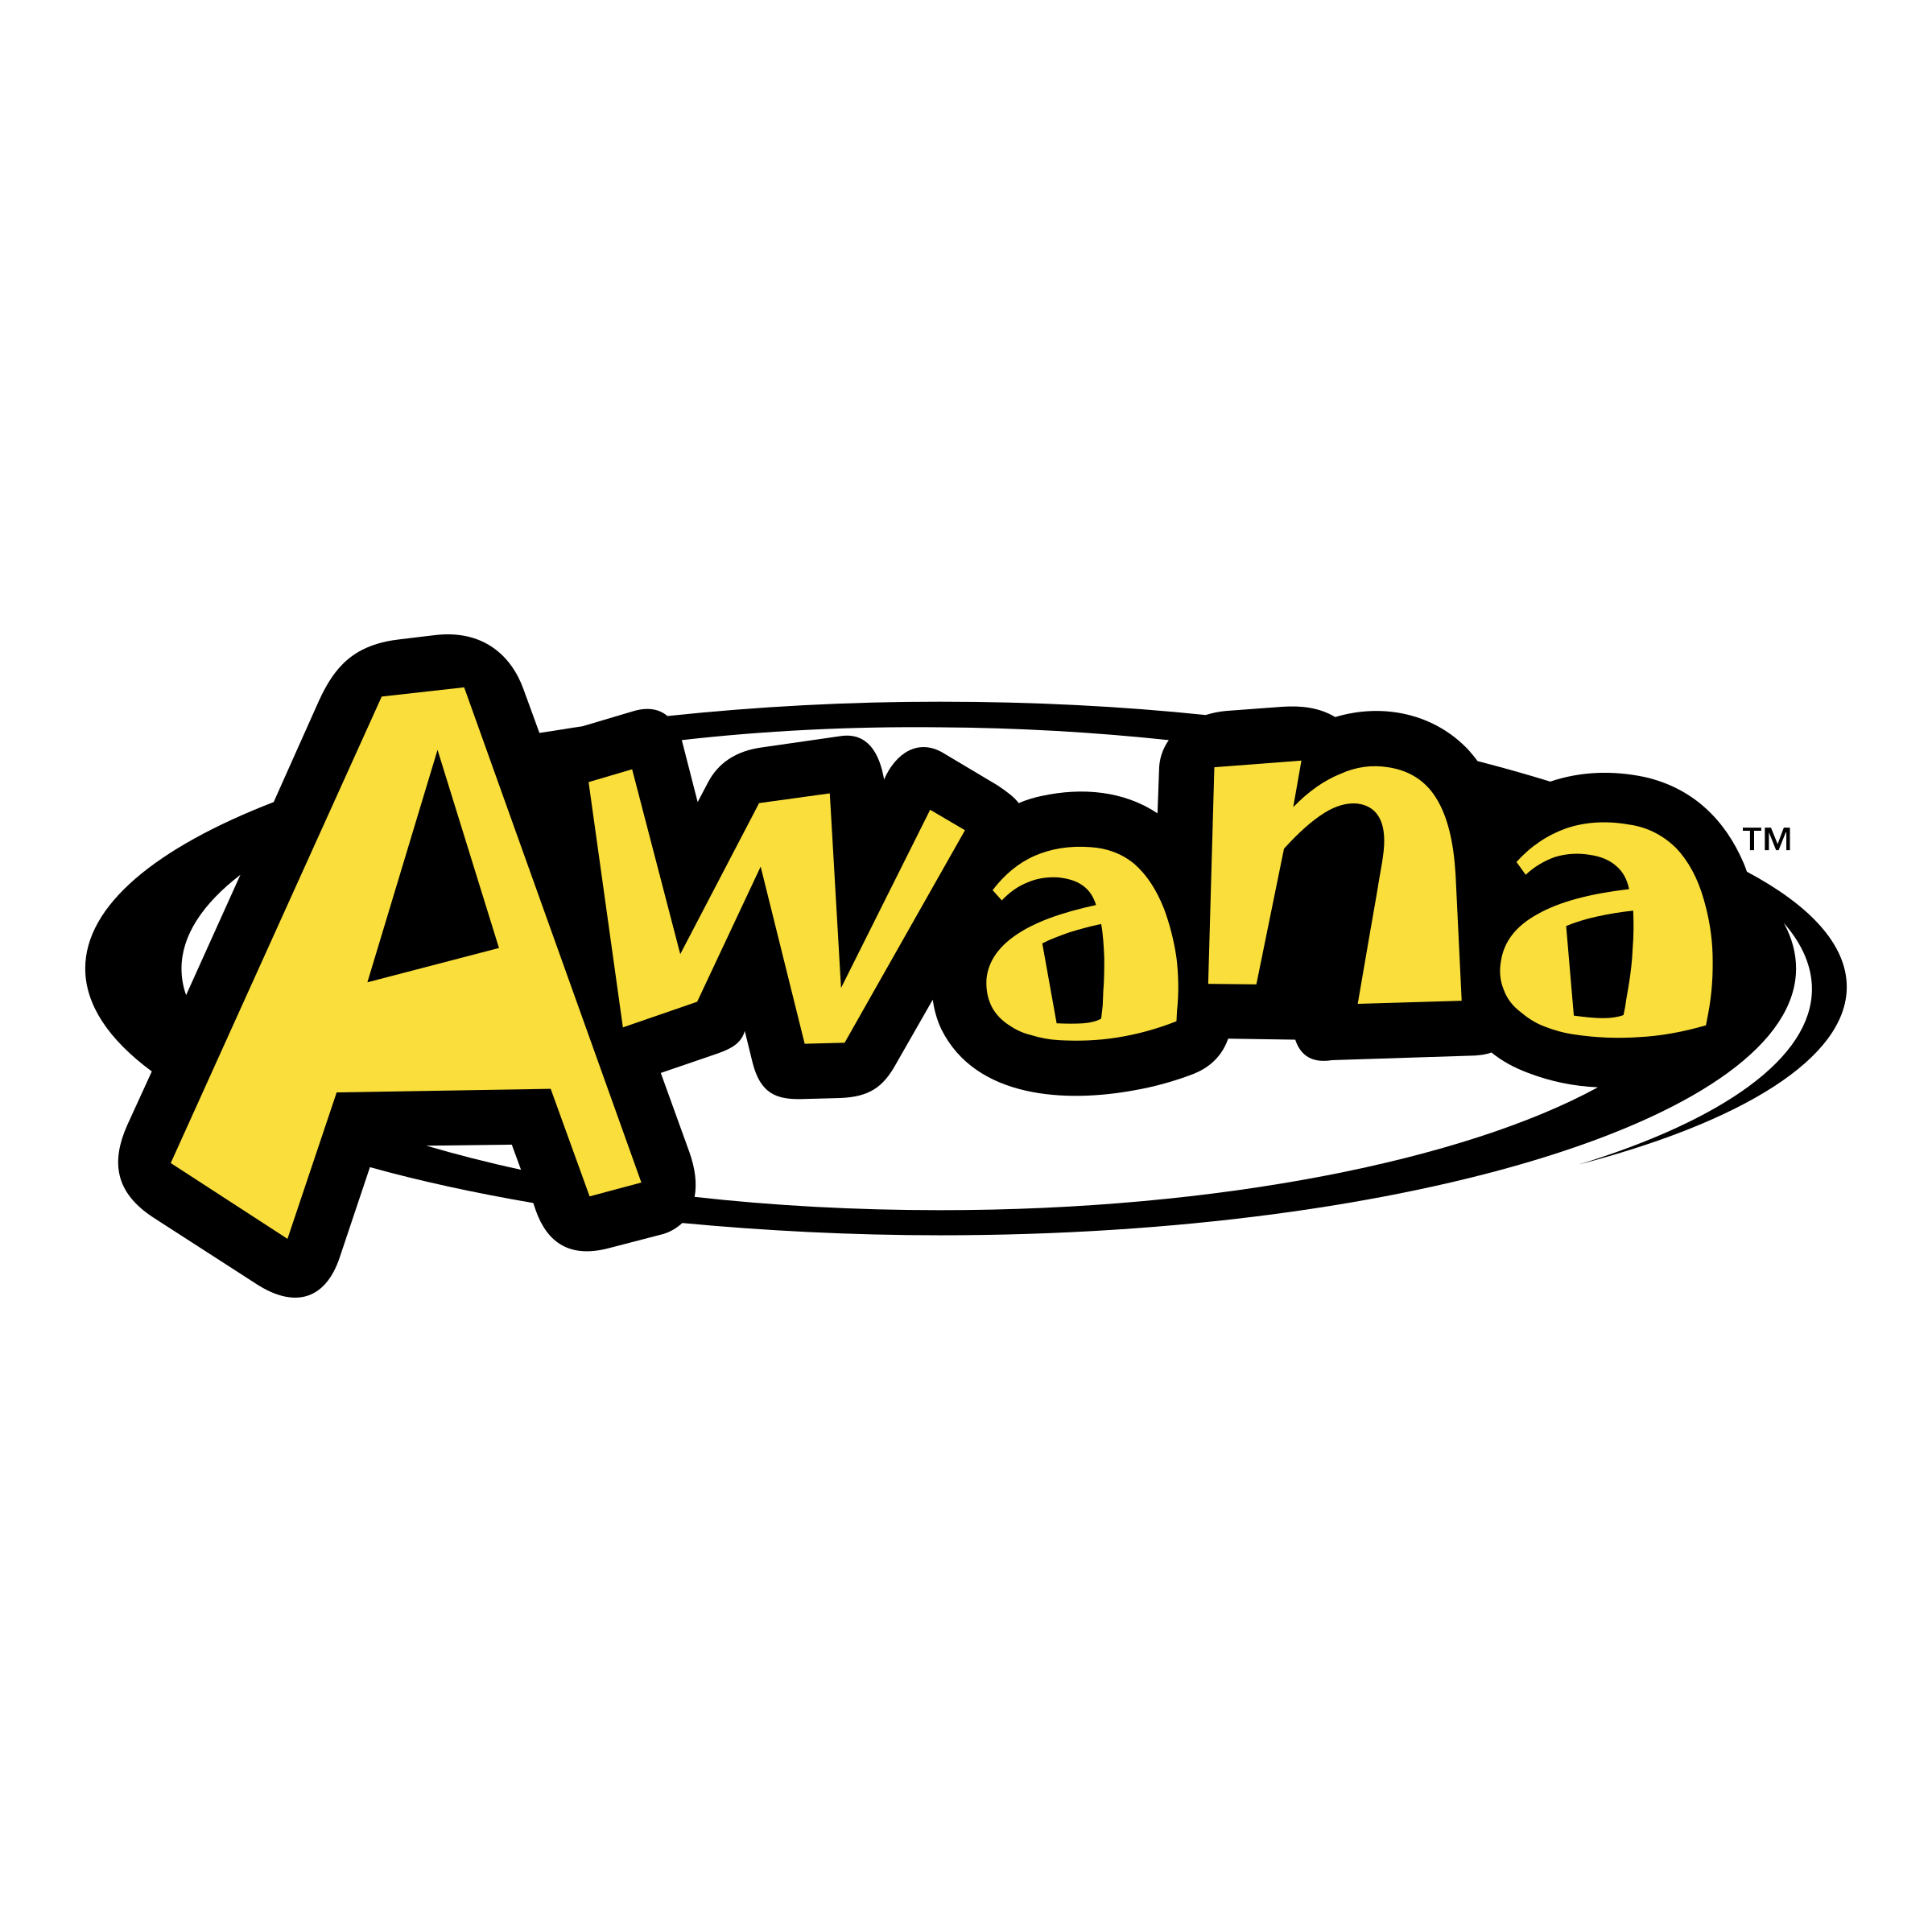 Logo clip art image. Awana clipart